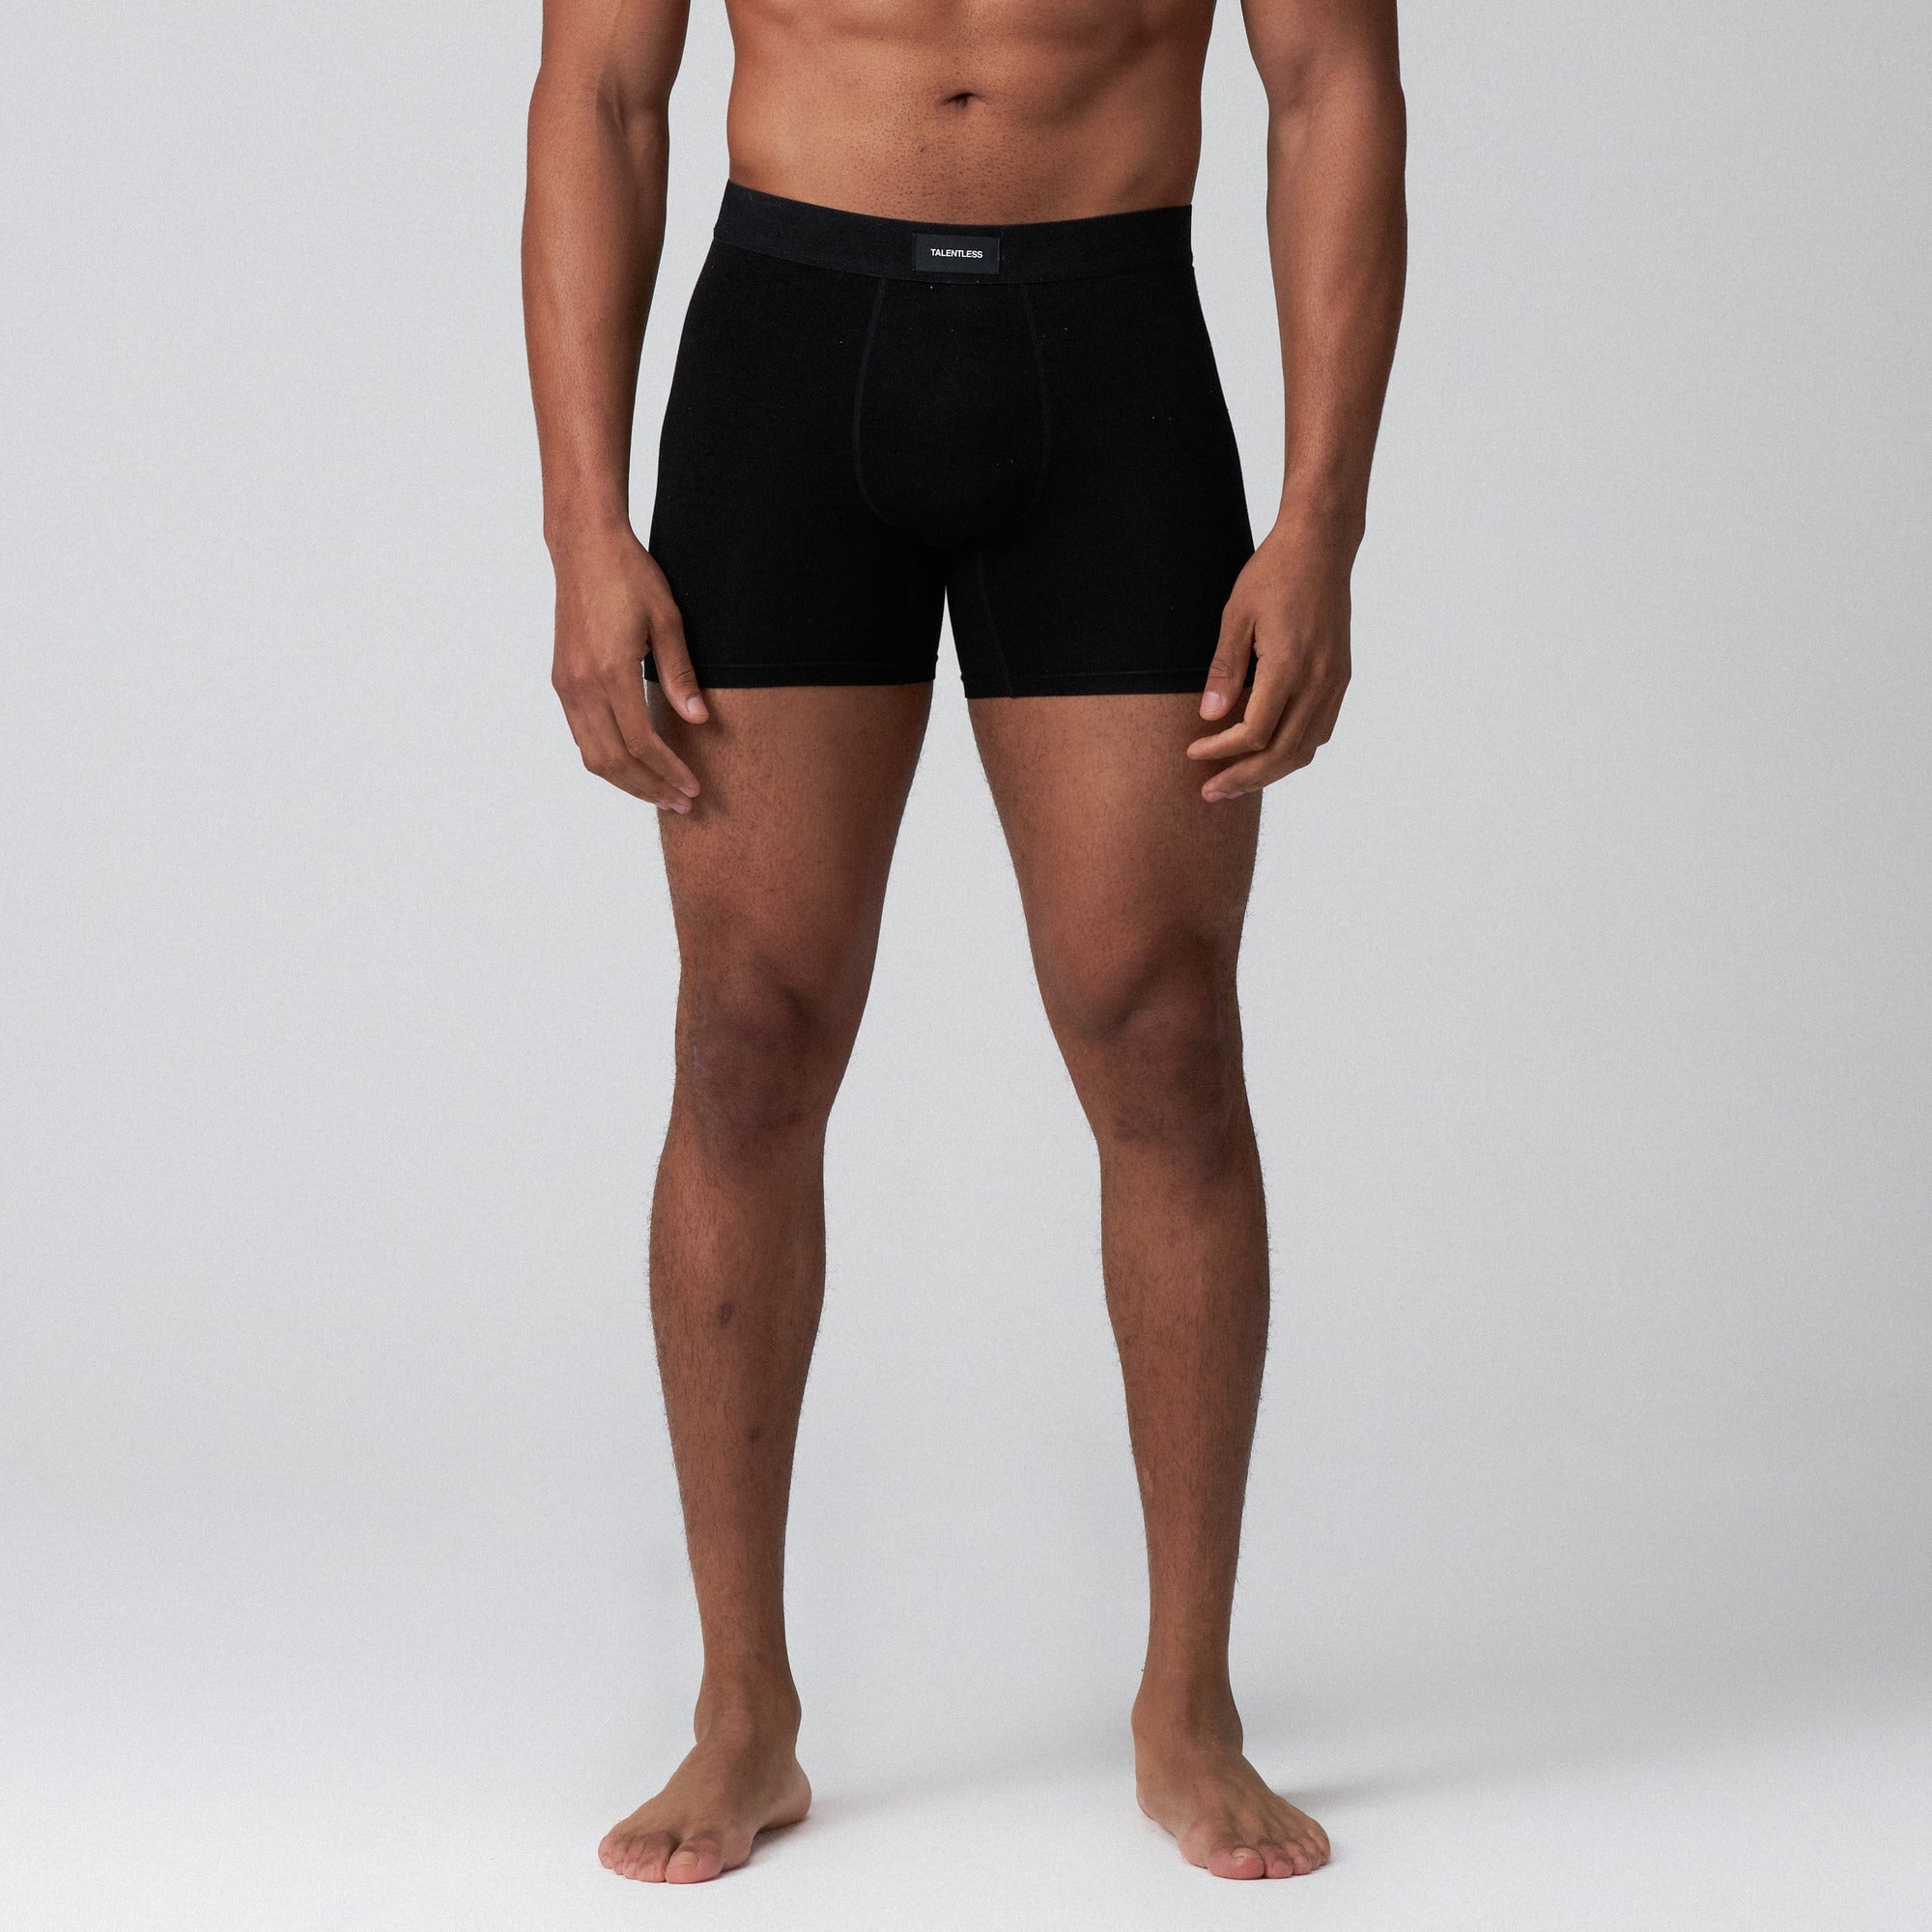 Supreme BLACK Underwear Boxer Briefs Size Medium Nepal